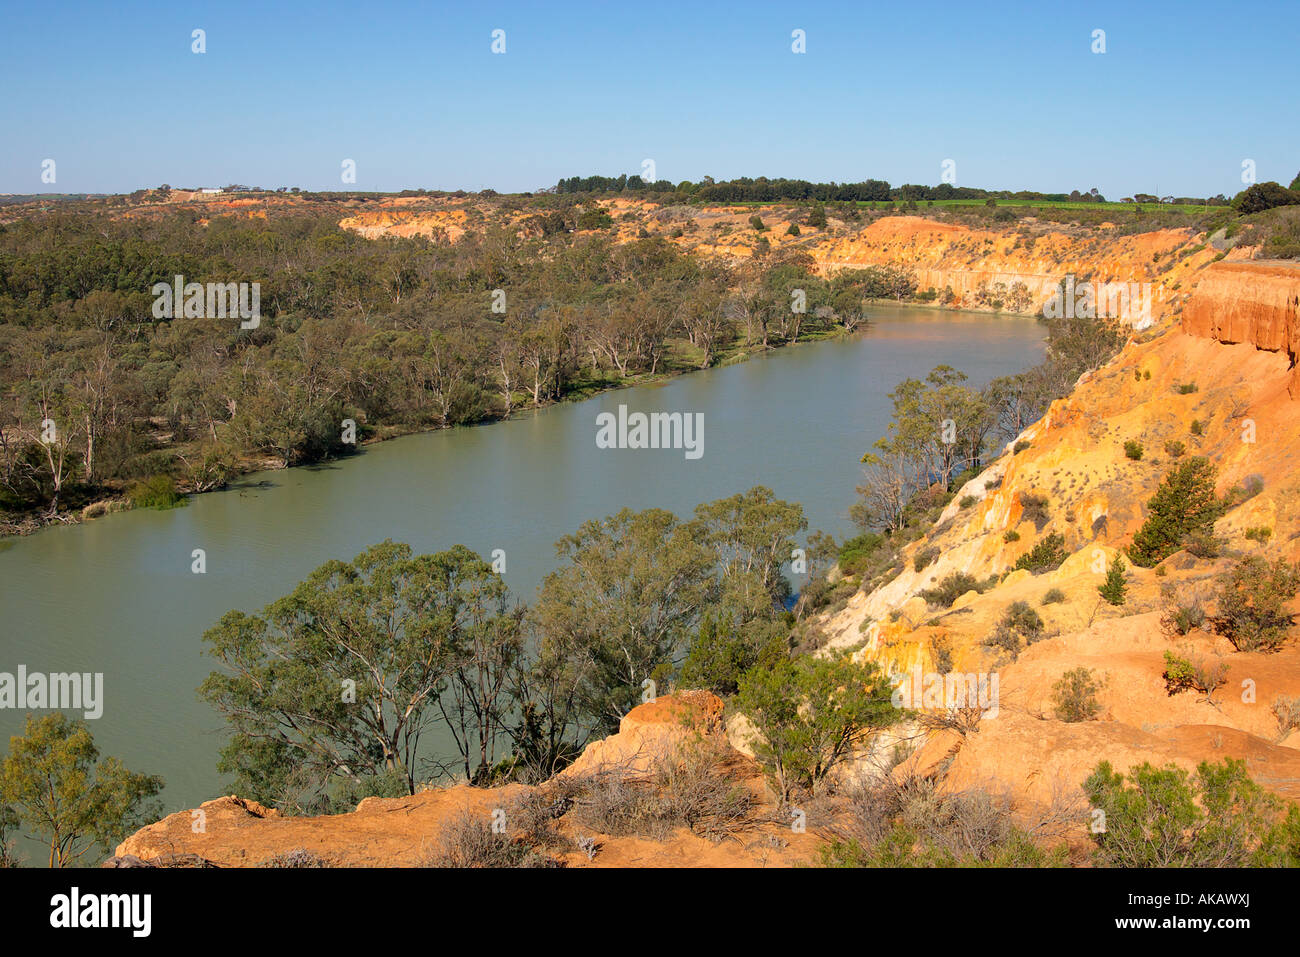 Regardant vers le bas sur la rivière Murray à renmark Australie du Sud Banque D'Images